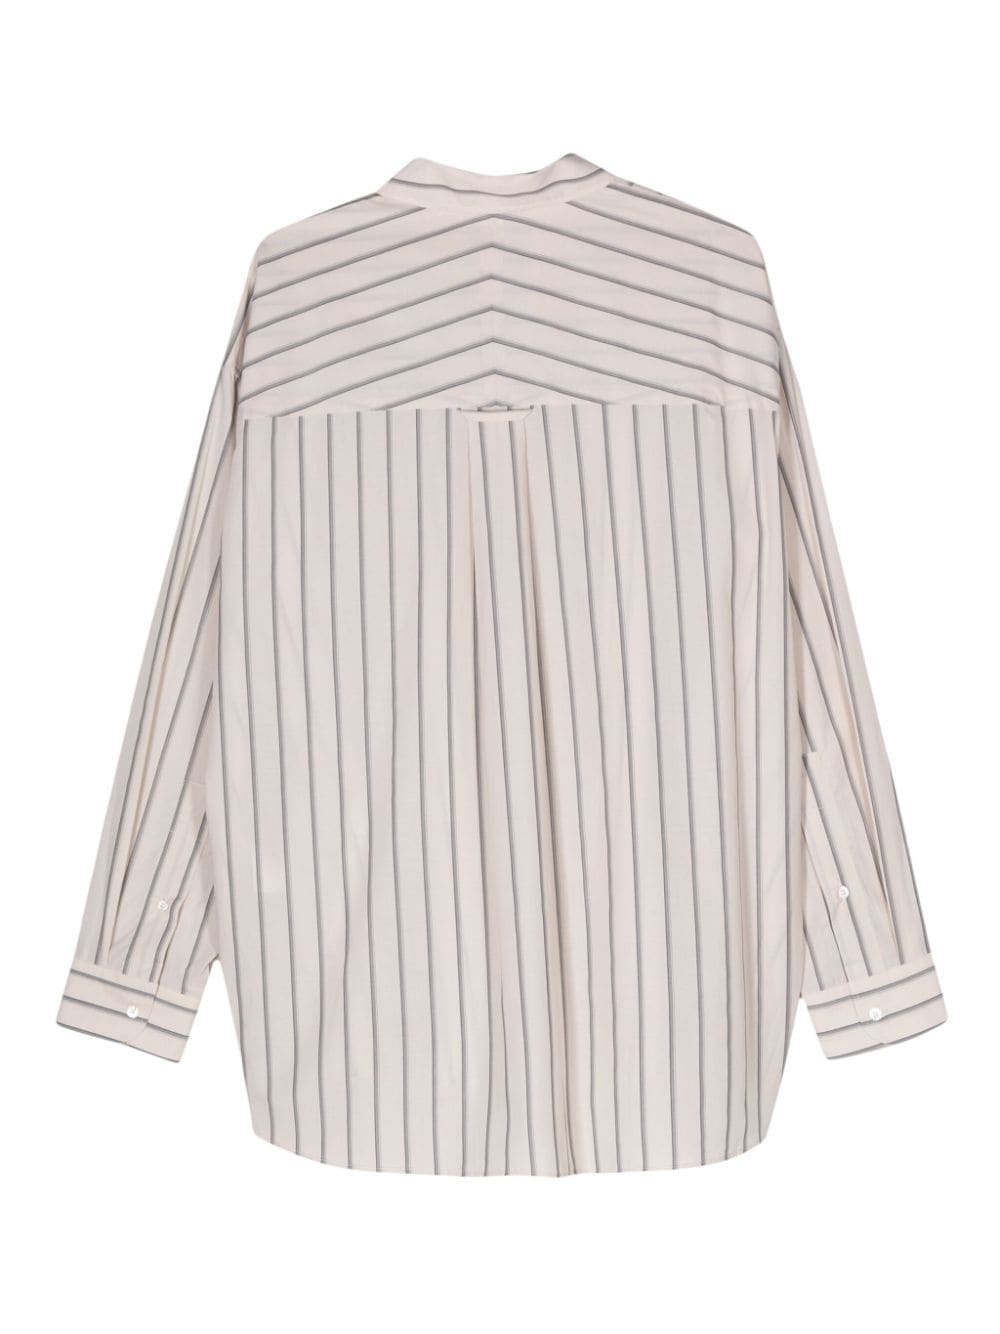 Studio Nicholson Loche striped shirt - Beige